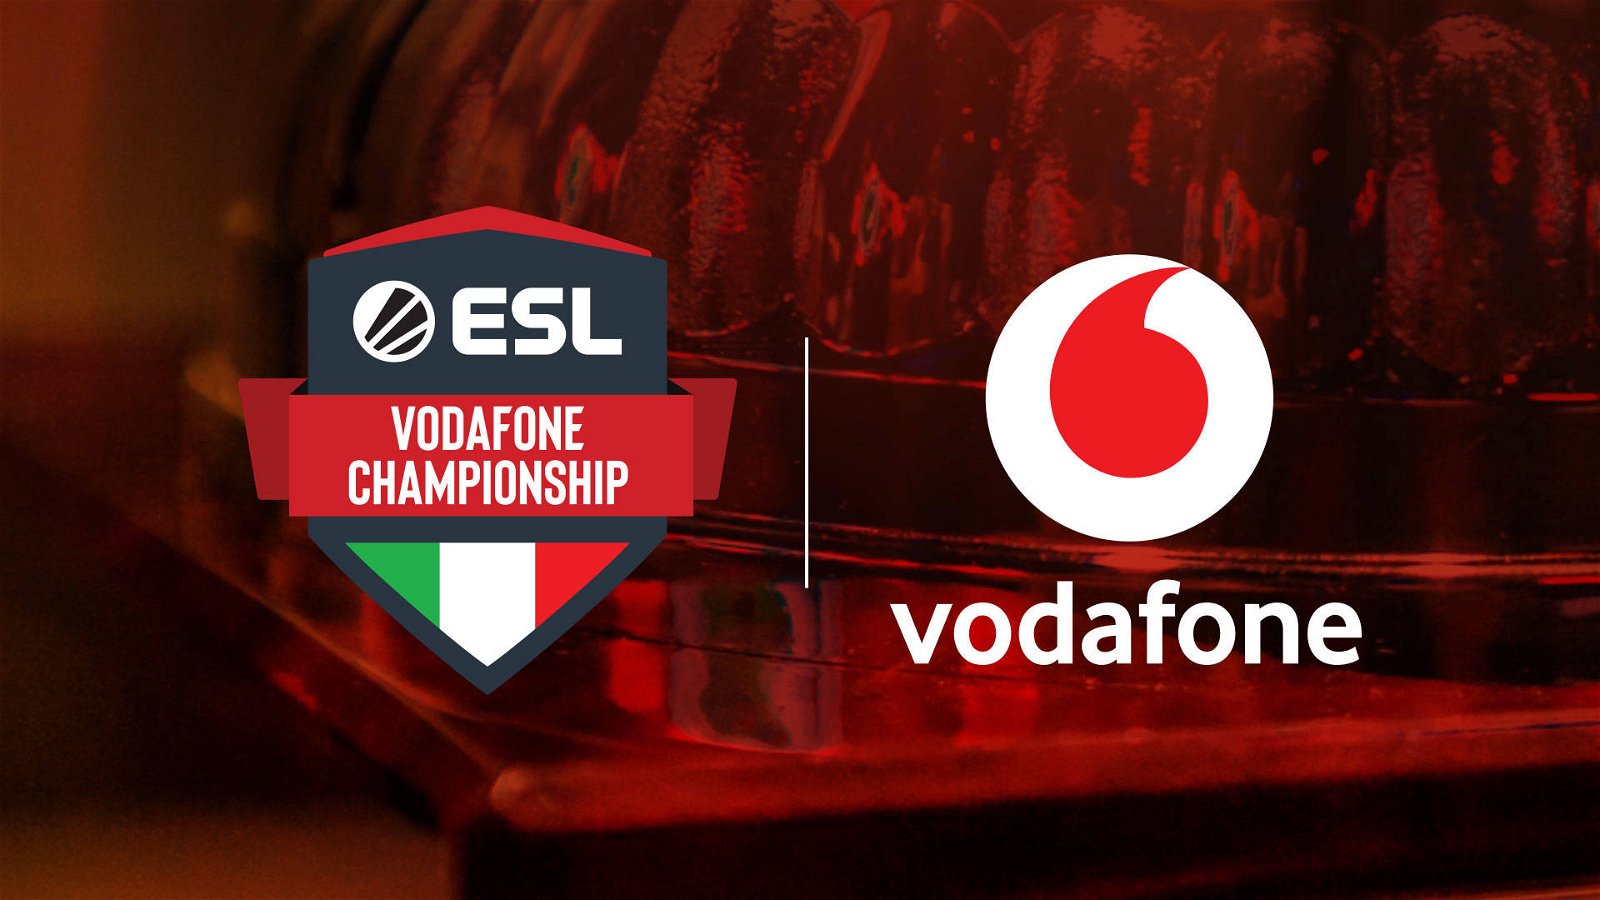 Immagine di ESL Vodafone Championship, procede senza interruzioni